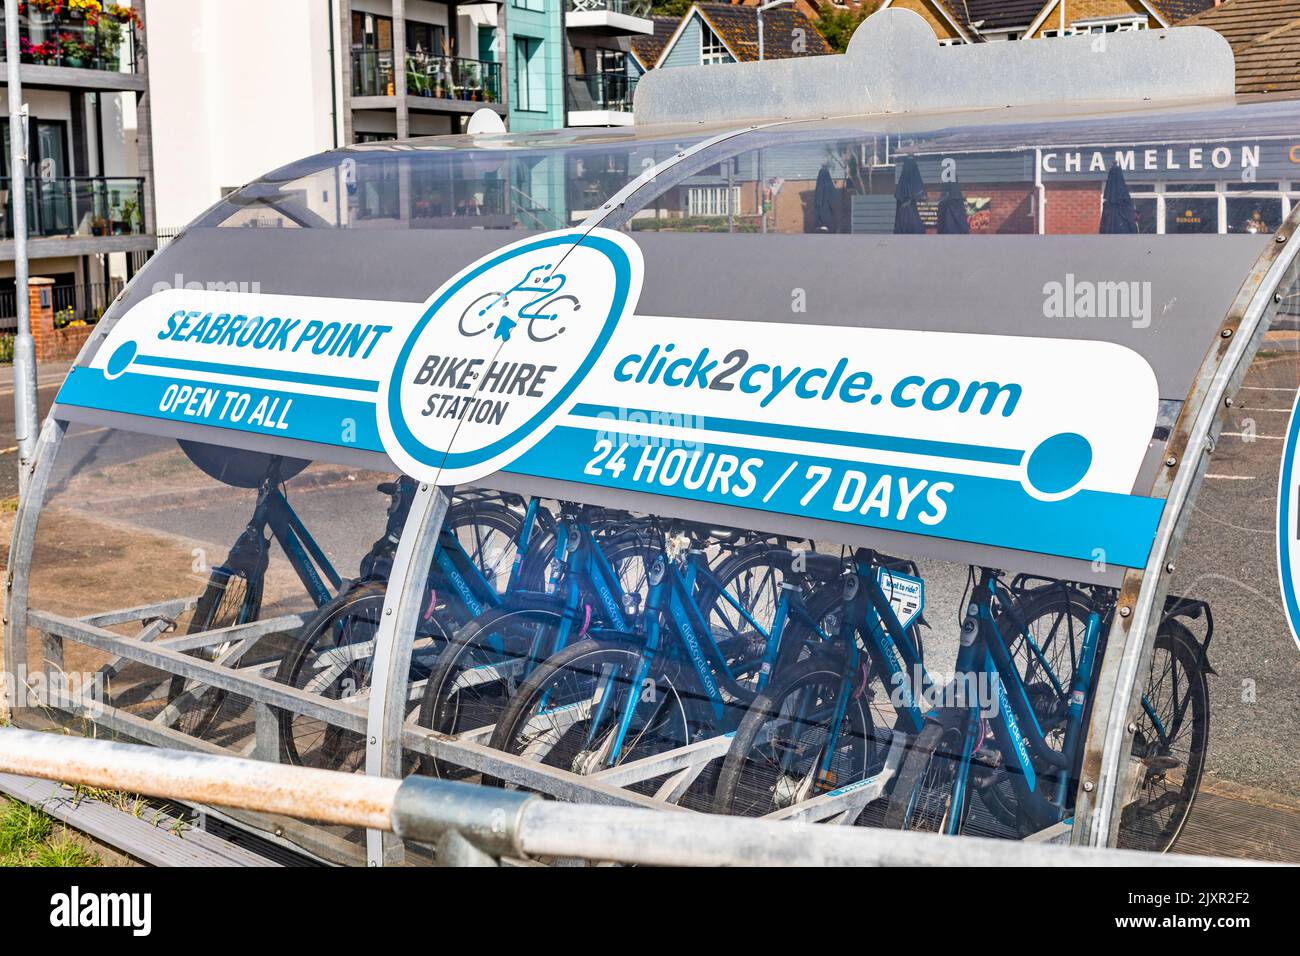 Una estación de alquiler de bicicletas de Click2Cycle.com en Seabrook, Kent Foto de stock